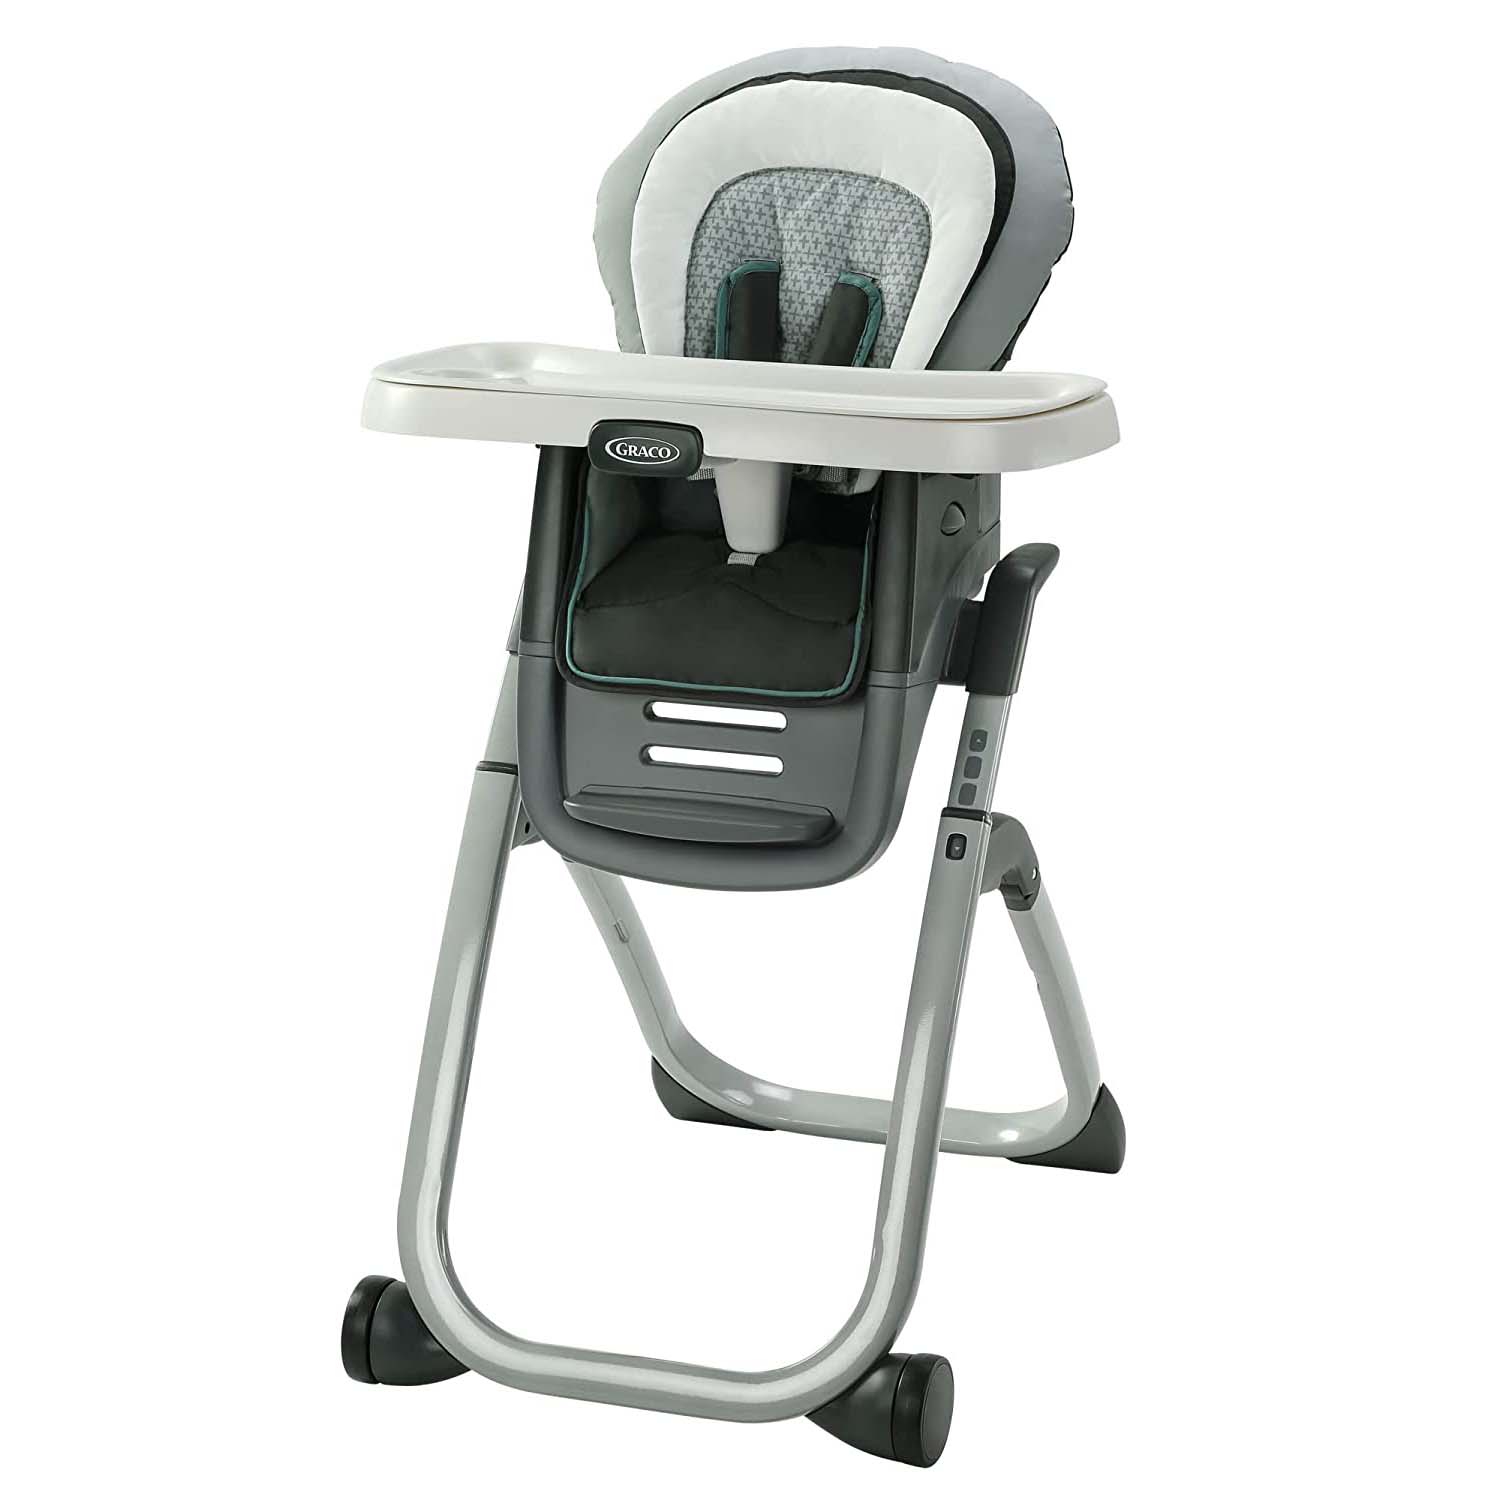 Стульчик для кормления 6 в 1 Graco DuoDiner DLX, серый стульчик для кормления детей bq bch002